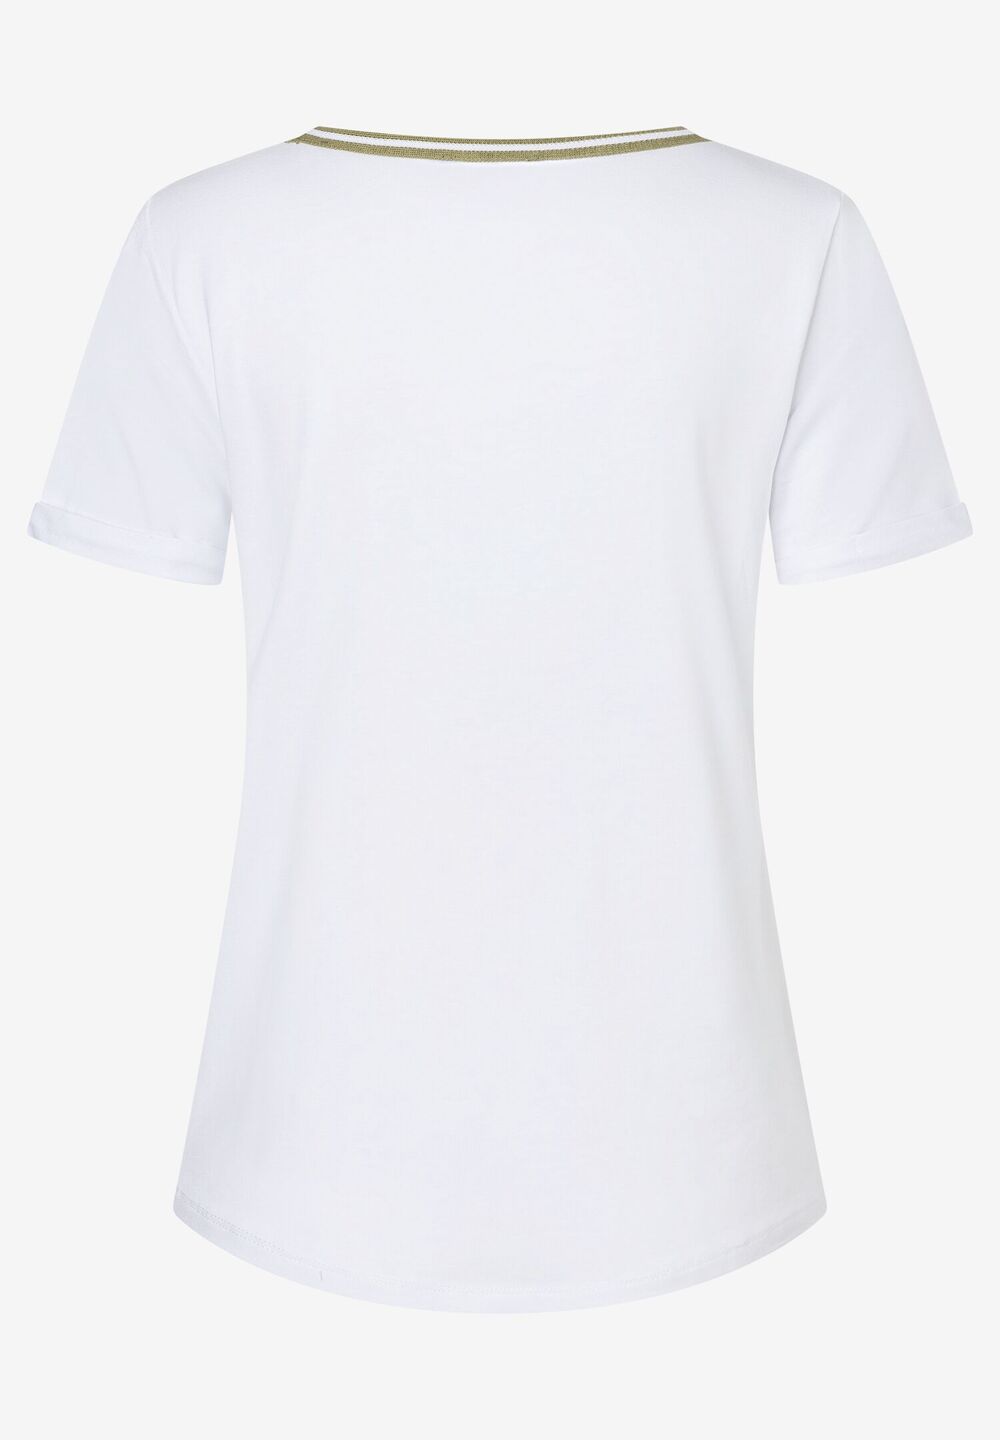 T-Shirt mit Schriftzug, weiß, Sommer-Kollektion, weissDetailansicht 2